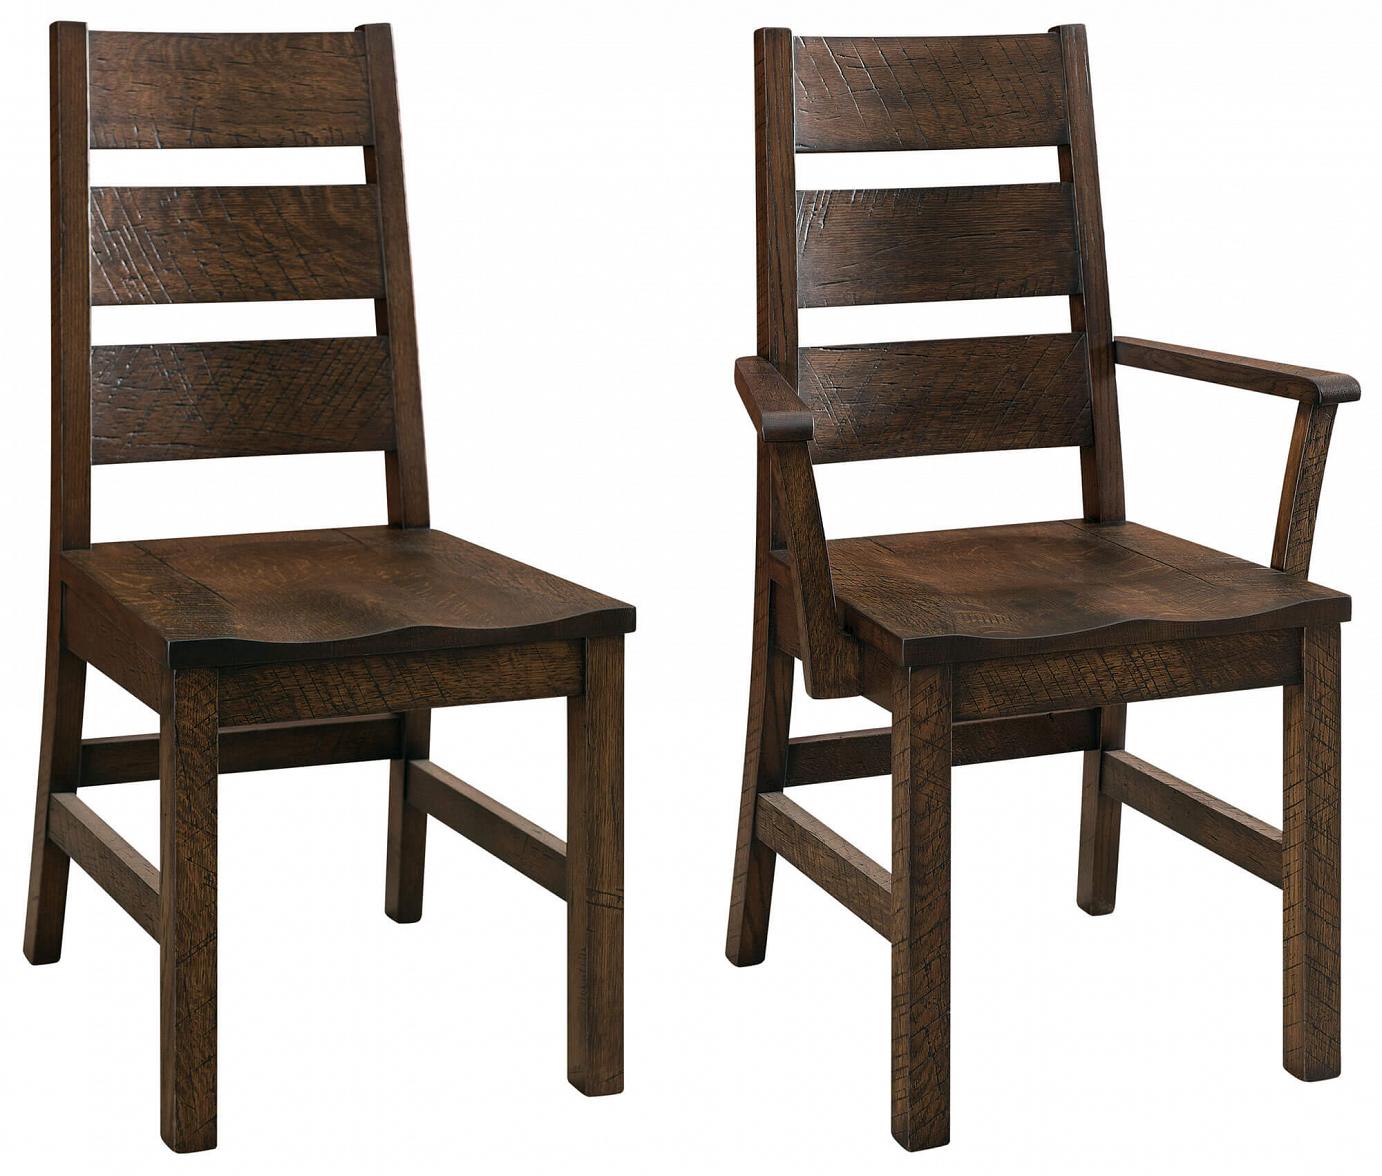 RH Yoder Sawyer Chairs